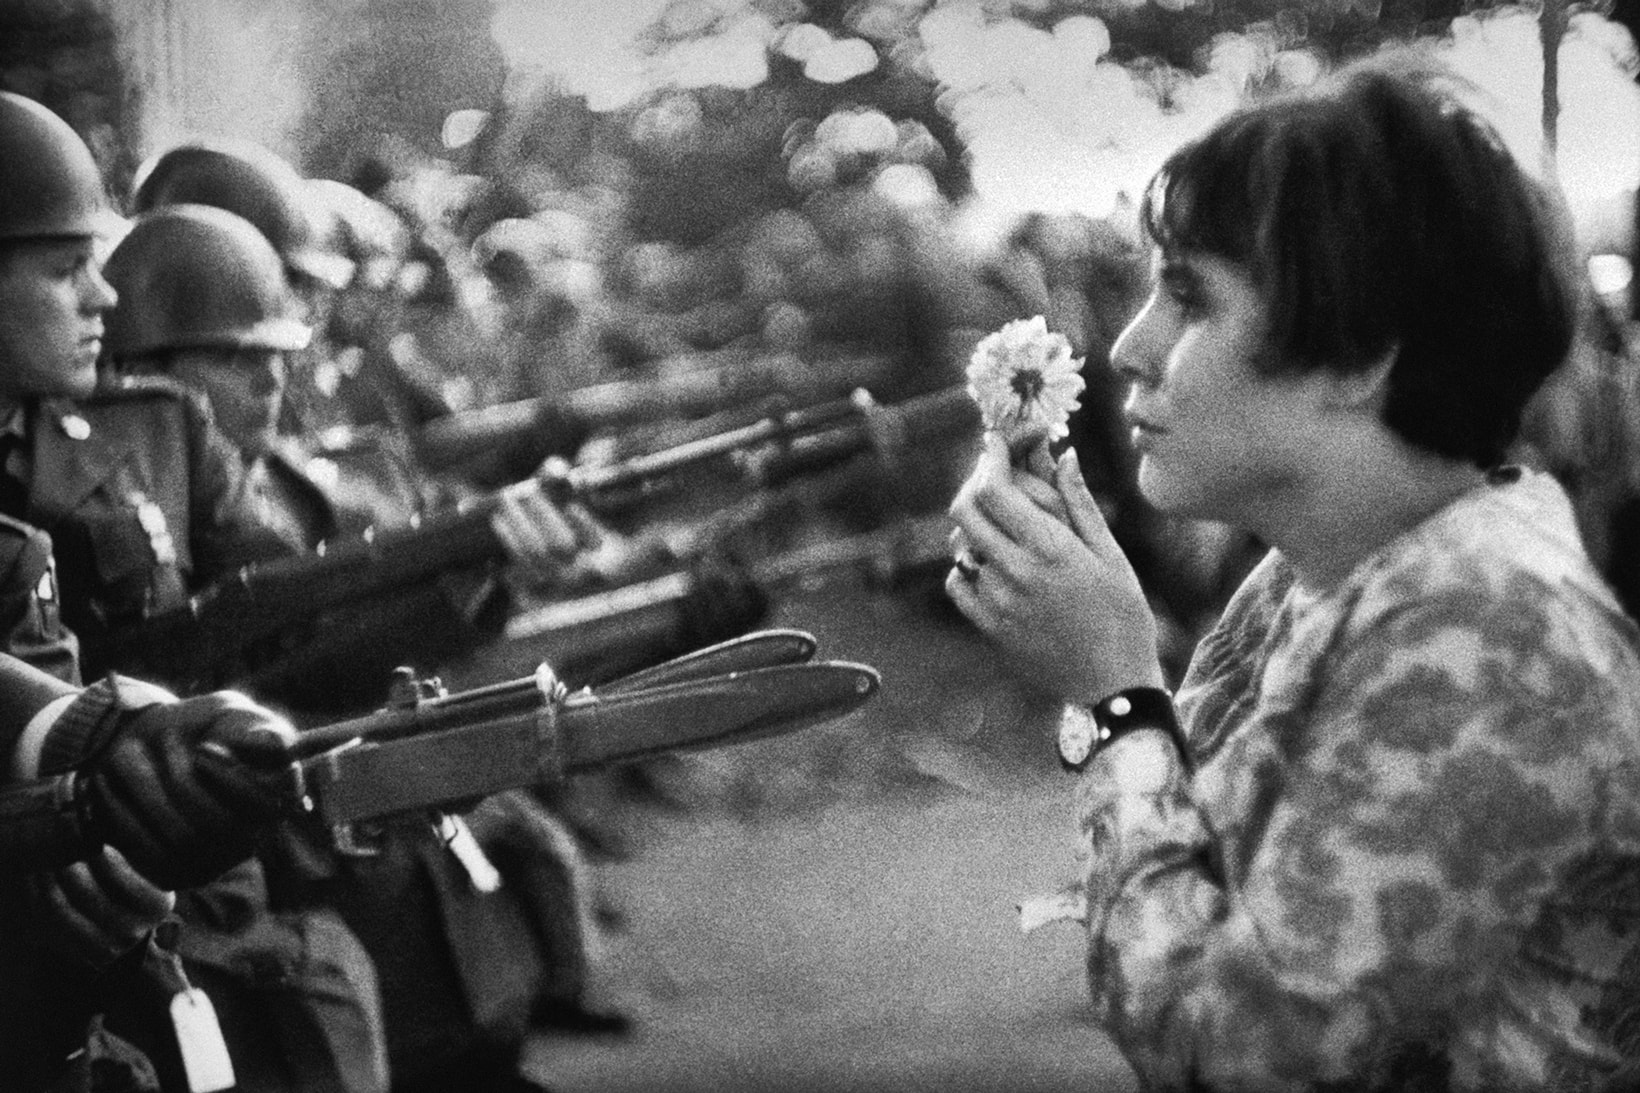 日本花卉藝術家 Azuma Makoto 為 The Mass 策劃戰爭主題攝影展